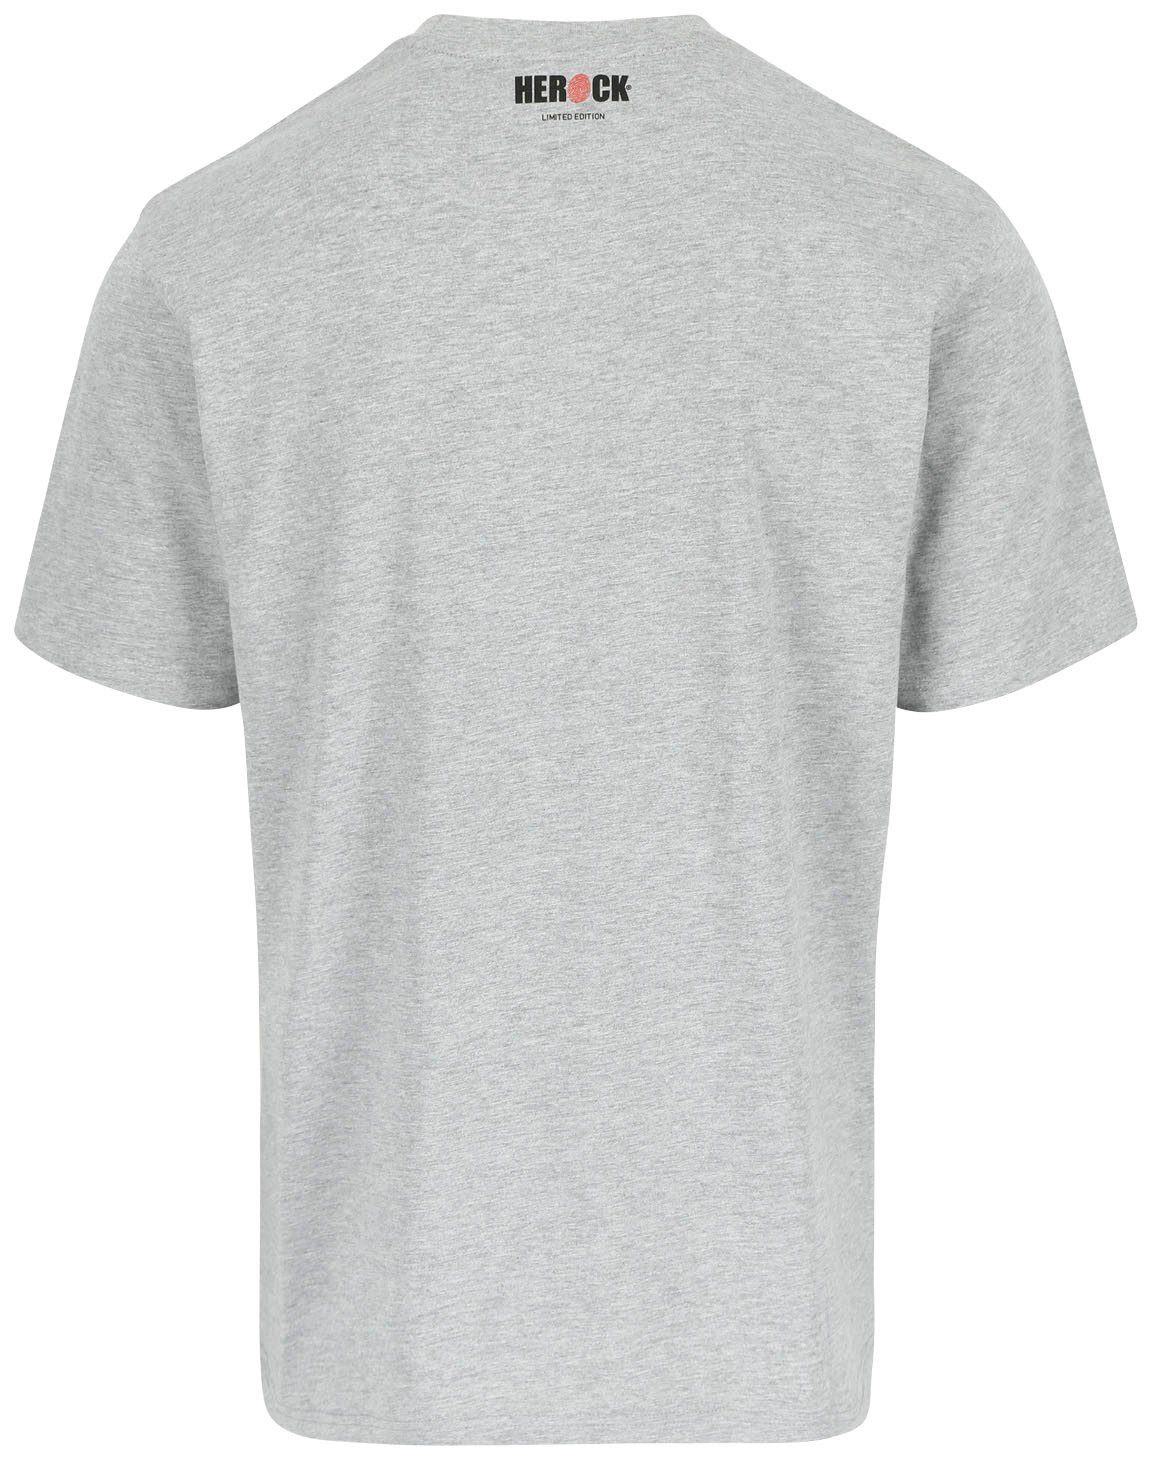 hellgrau Limited Worker verschiedene erhältlich in Herock Farben Edition, T-Shirt